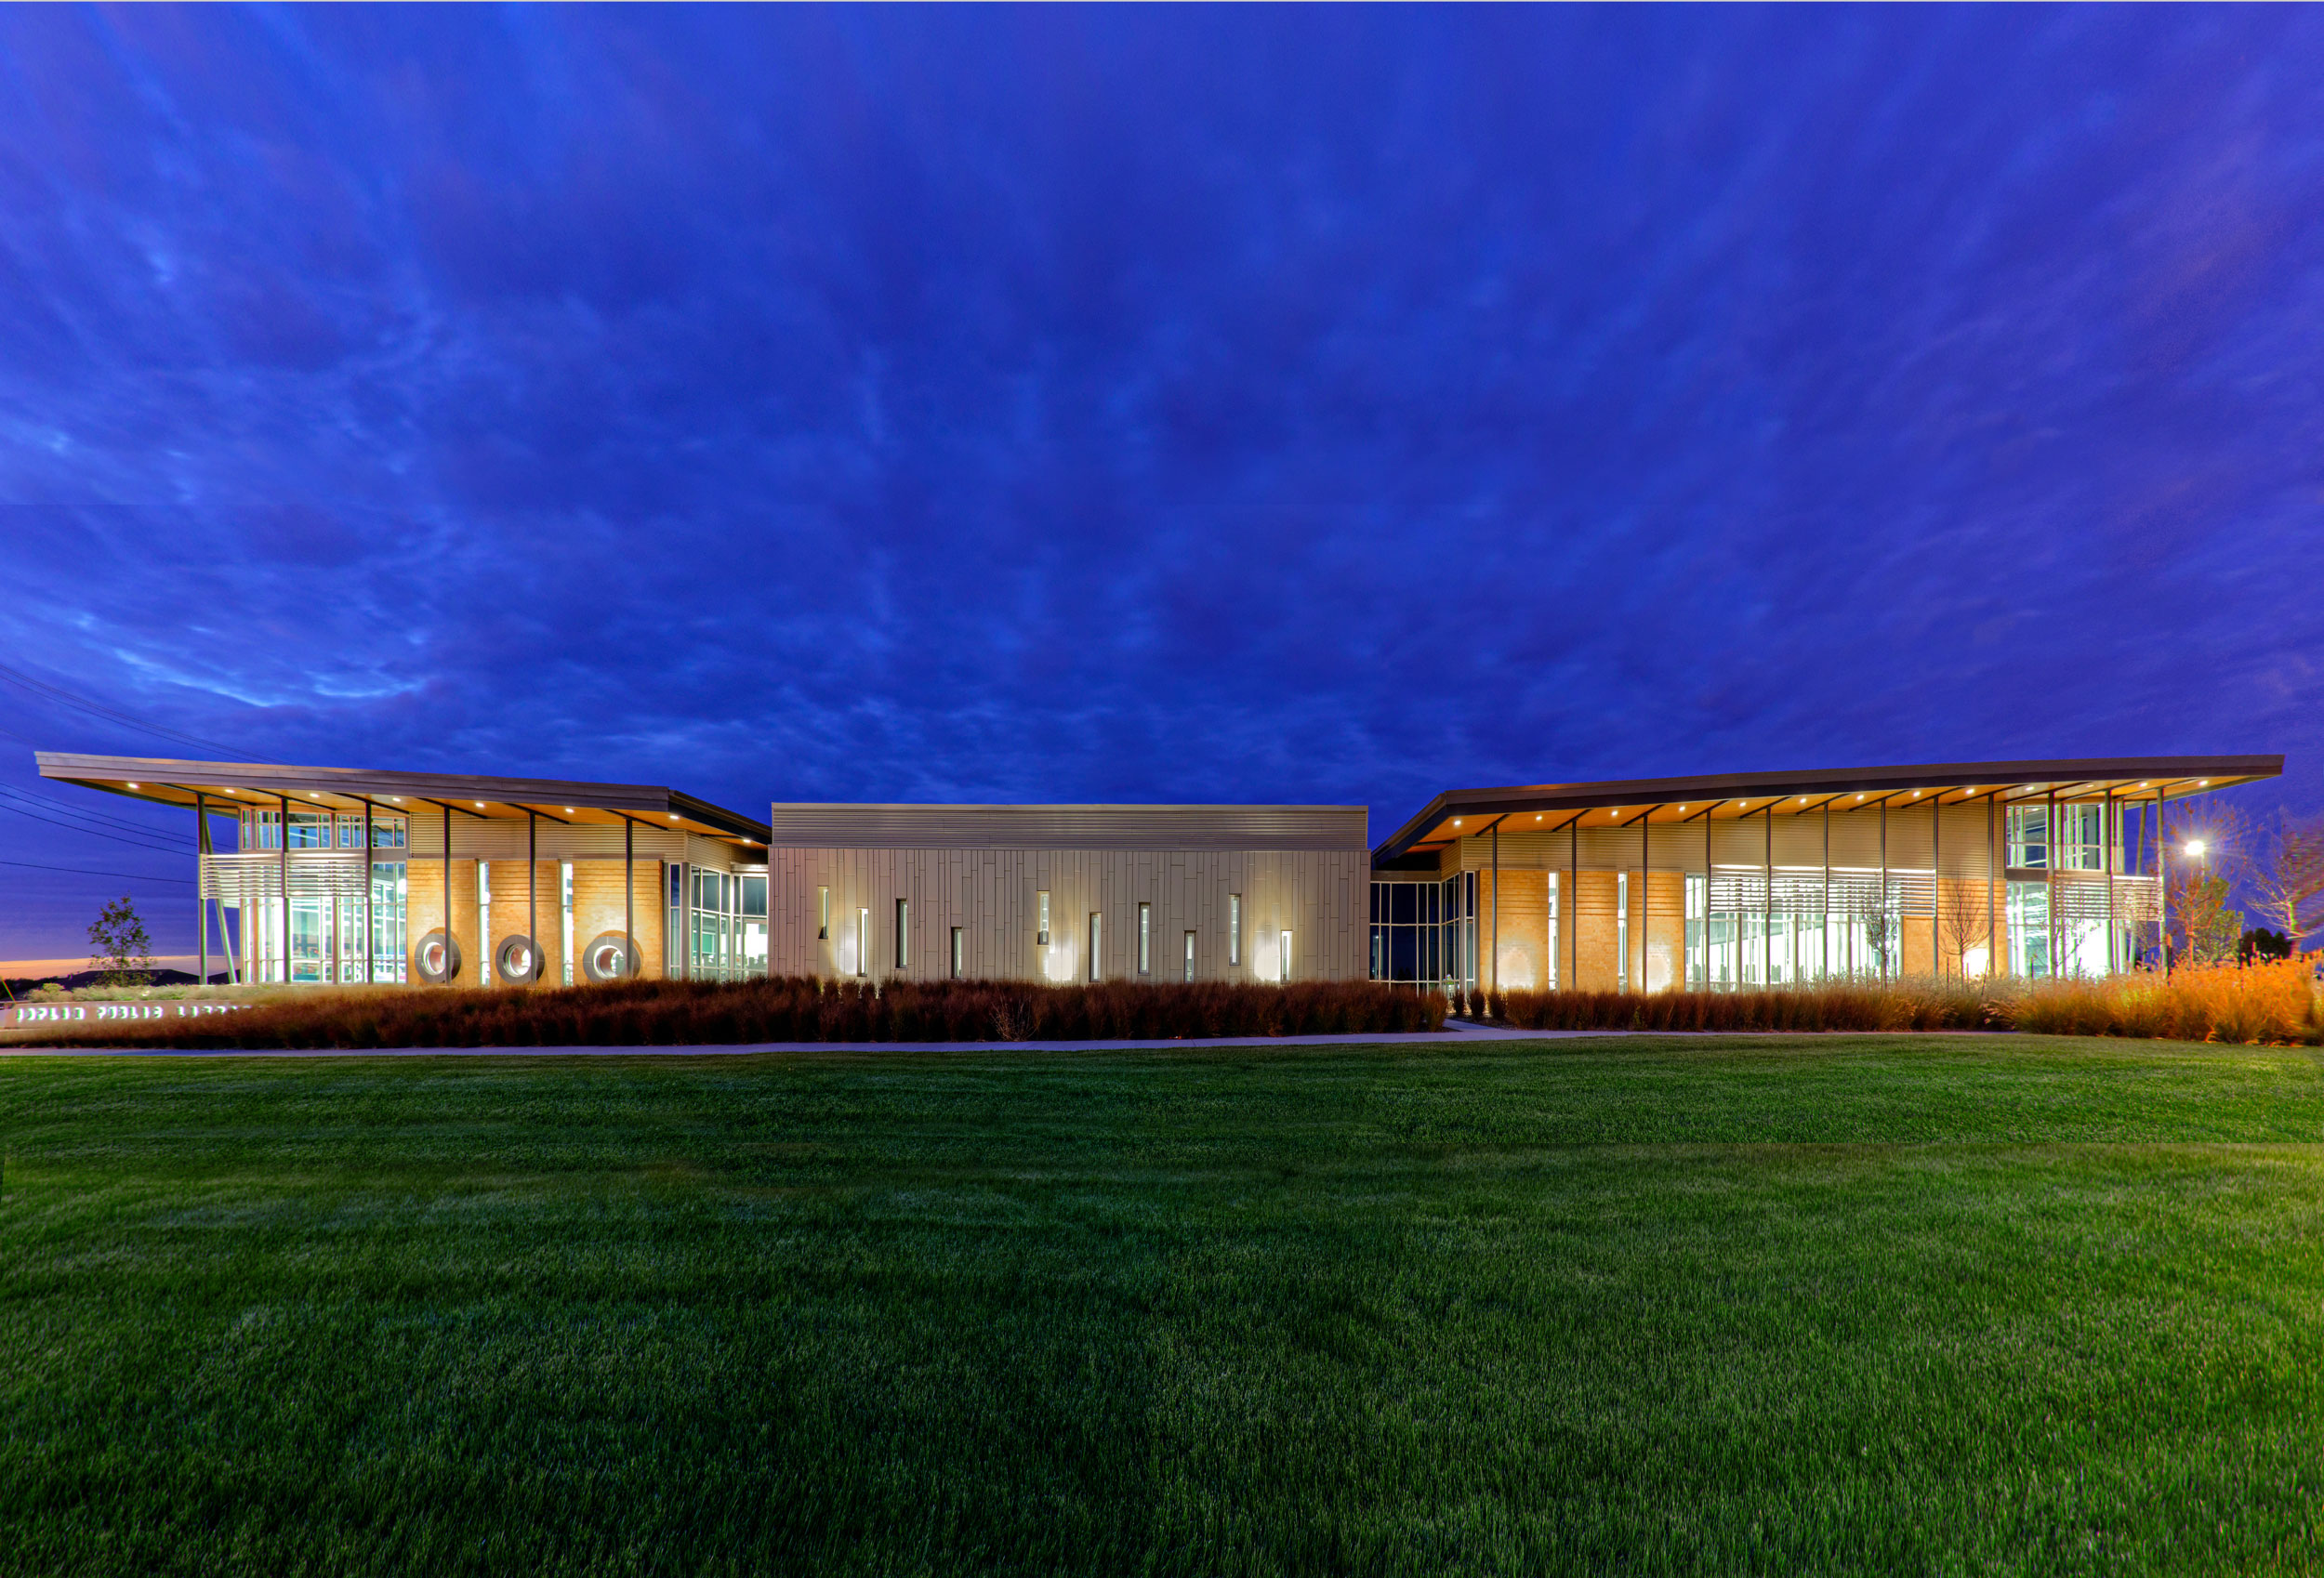 Opening Joplin New Public Library by Sapp Design